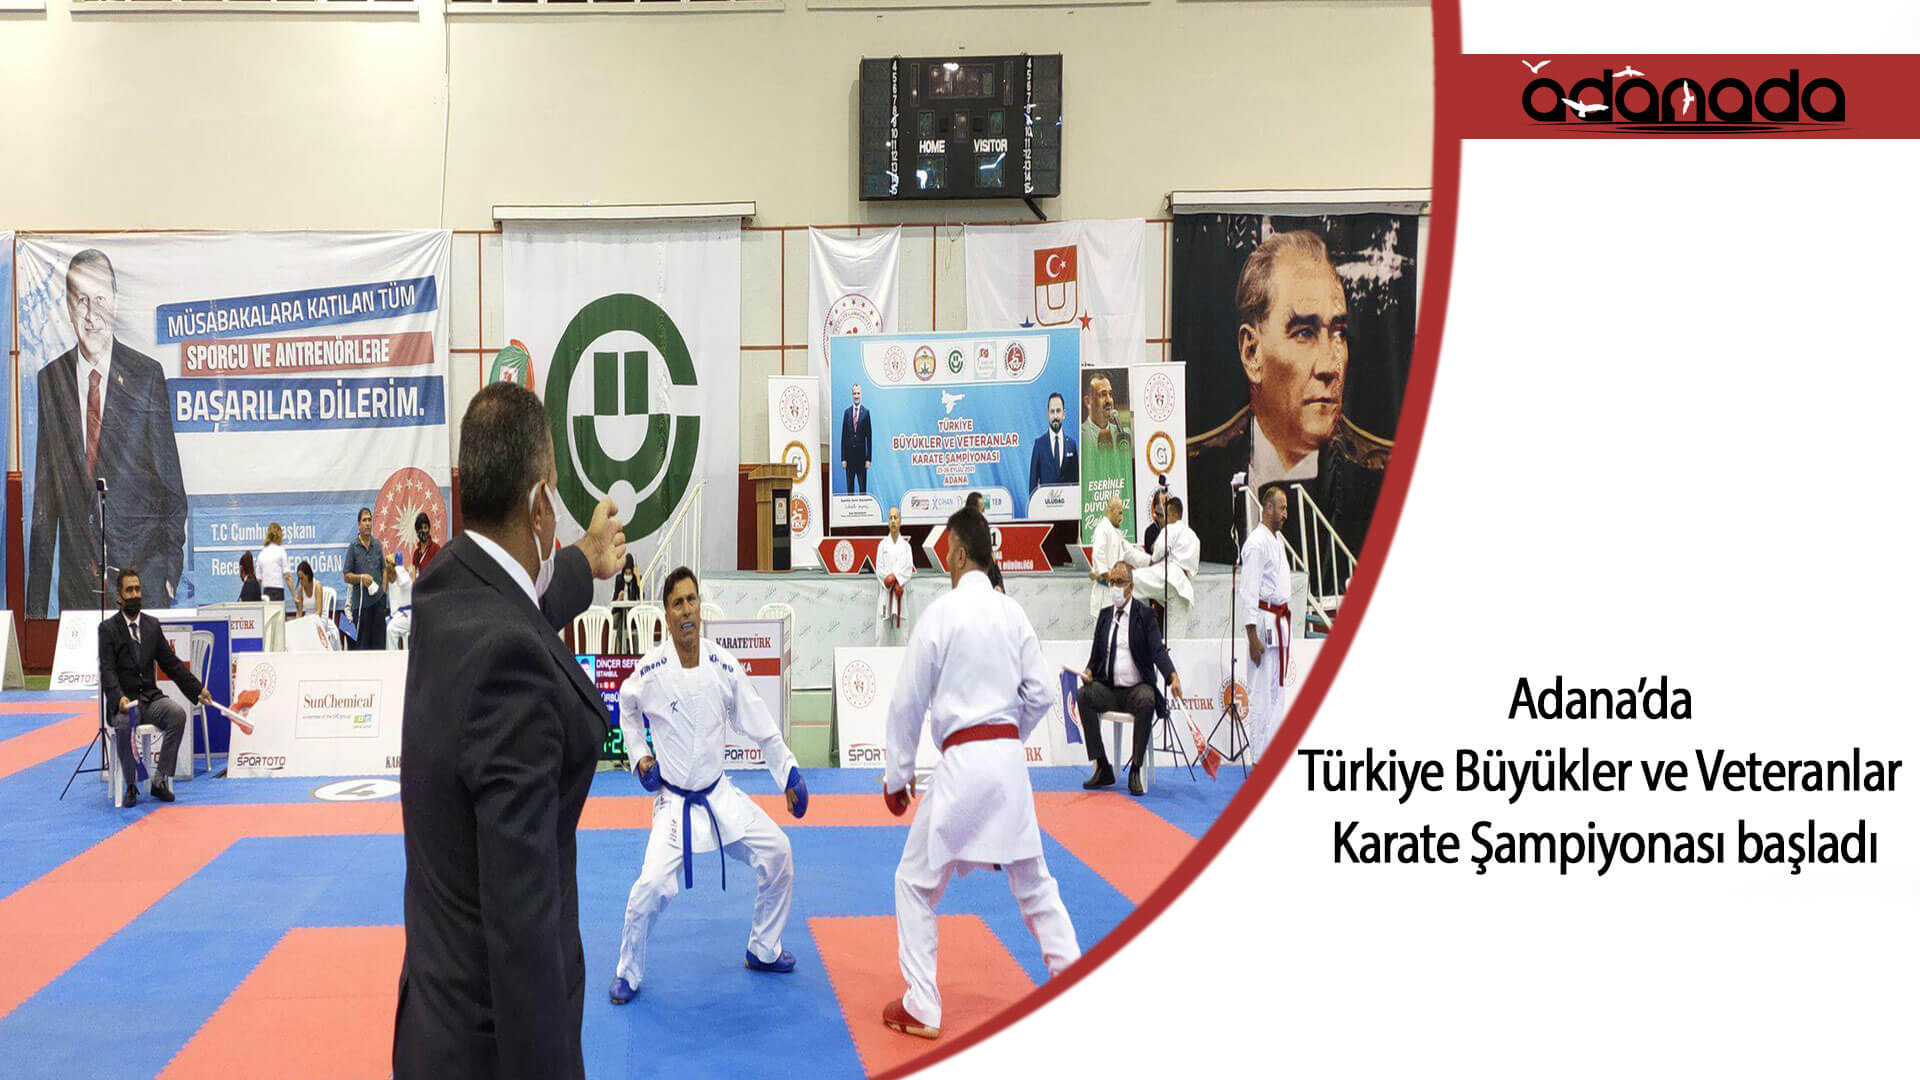 Türkiye Büyükler ve Veteranlar Karate Şampiyonası, Adana’da başladı